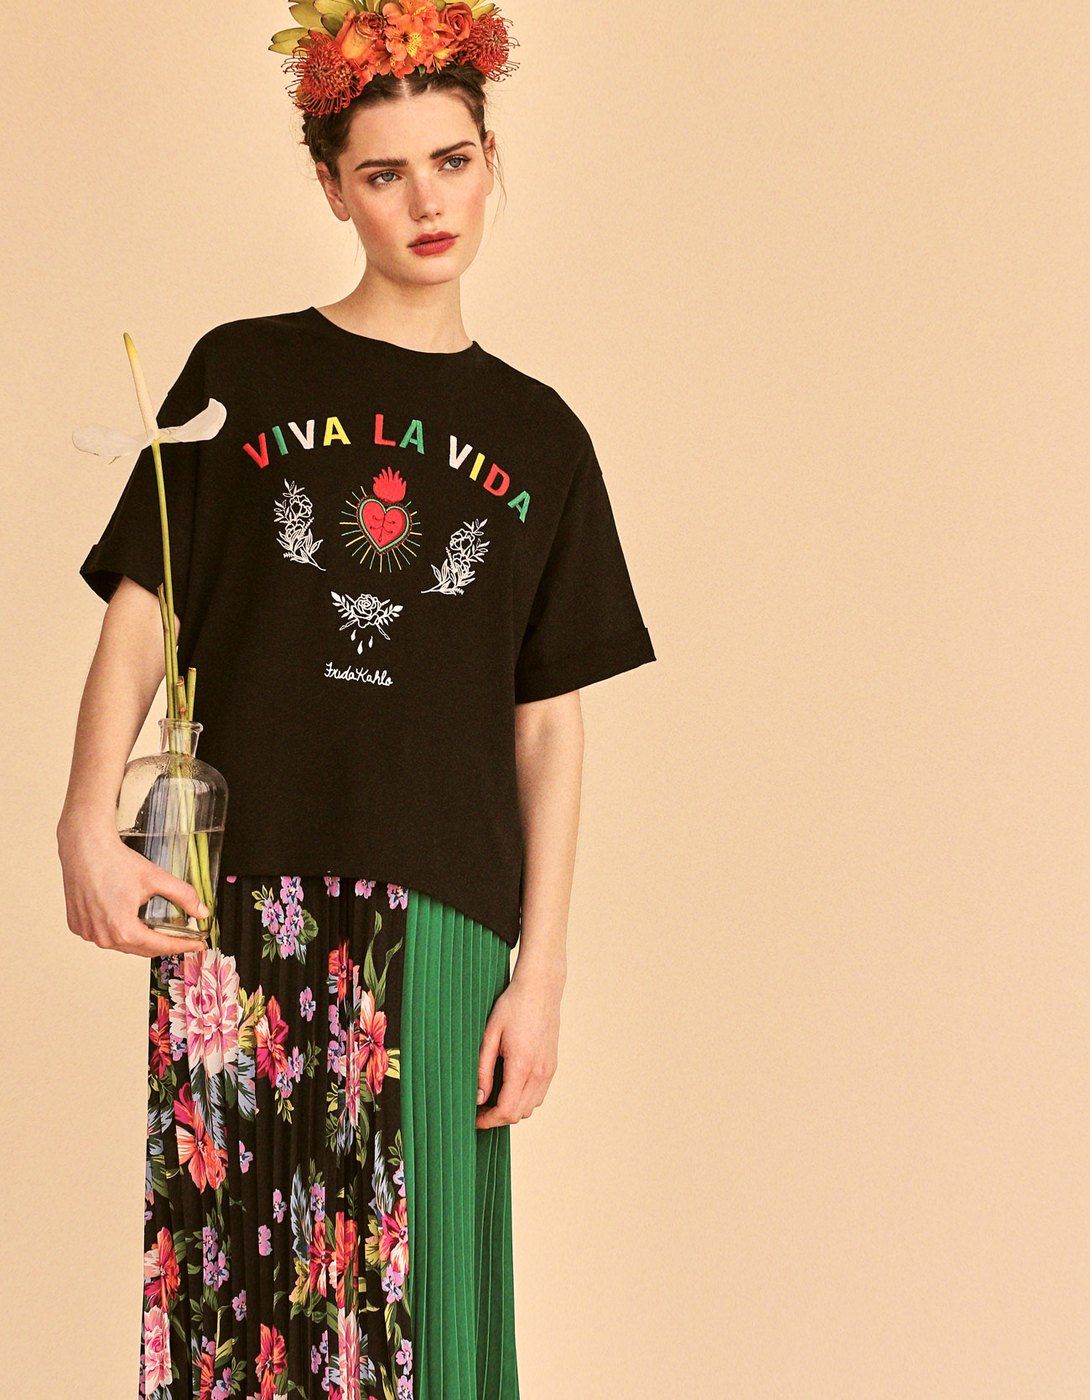 La fridamanía vuelve a la moda - tiene las camisetas de Frida Kahlo más totales